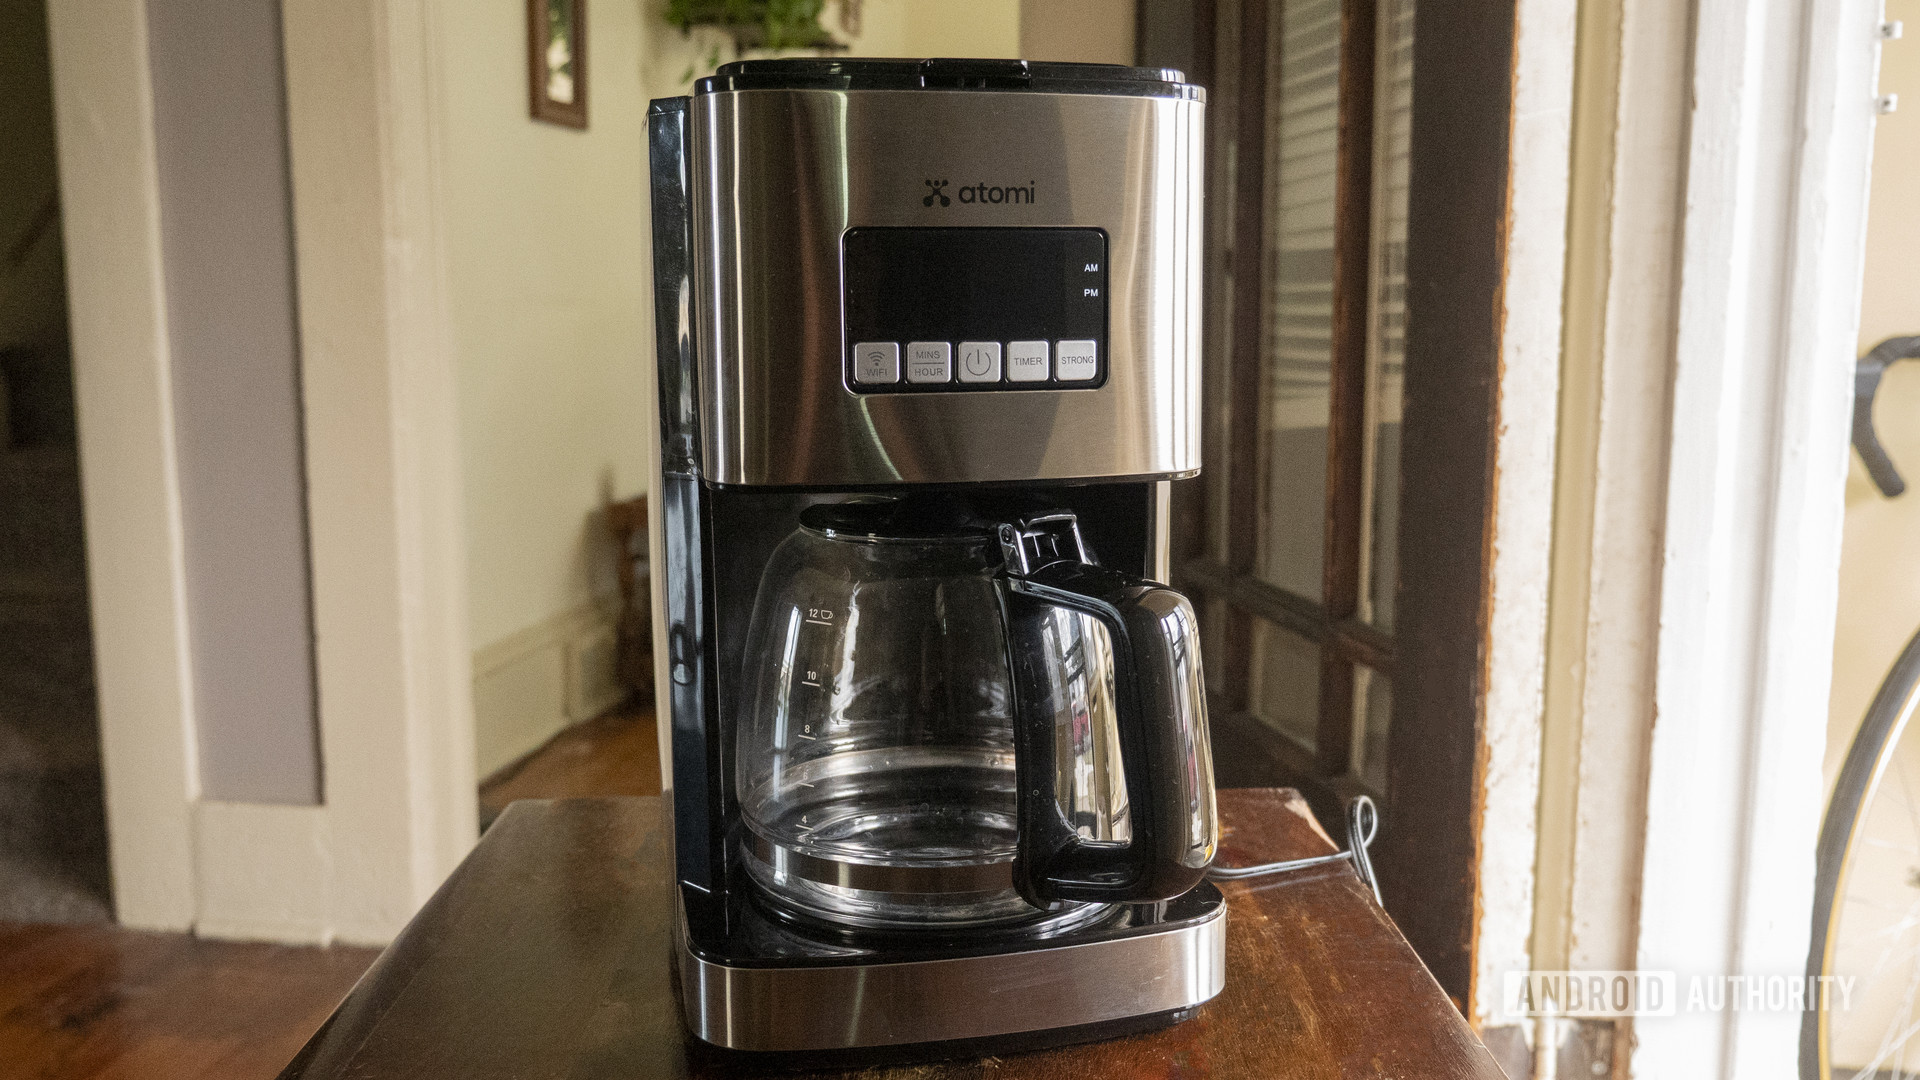 Smart Coffeemakers 2020